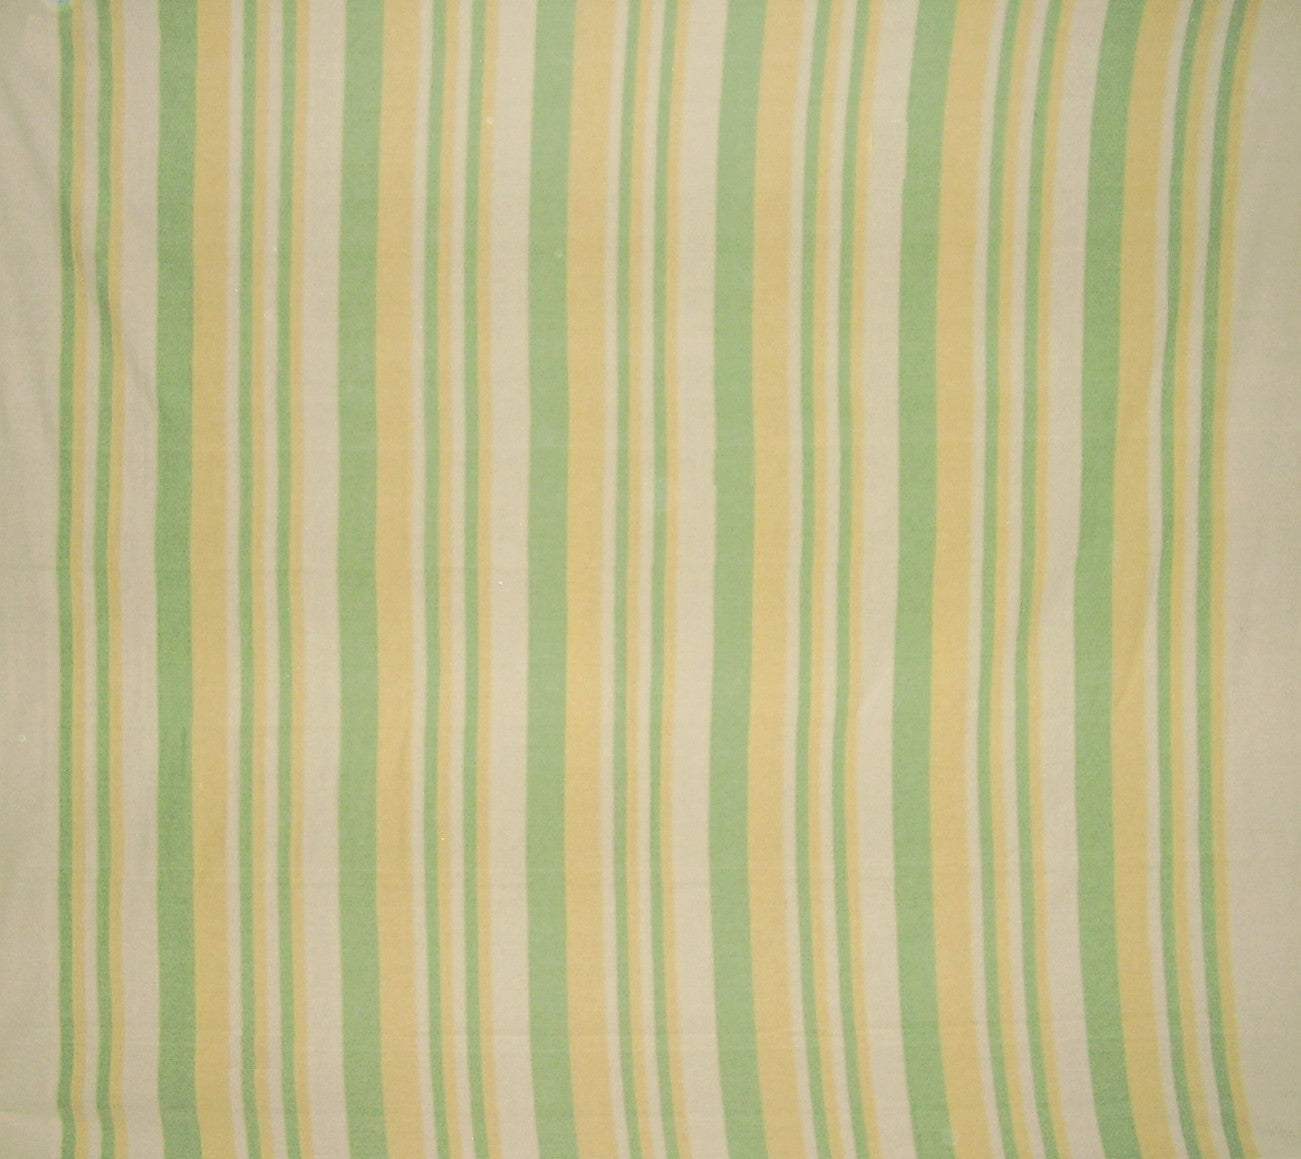 Κάλυμμα κρεβατιού με βαρύ βαμβακερό ραβδώσεις 98" x 88" Πλήρες πράσινο & κίτρινο σε μπεζ